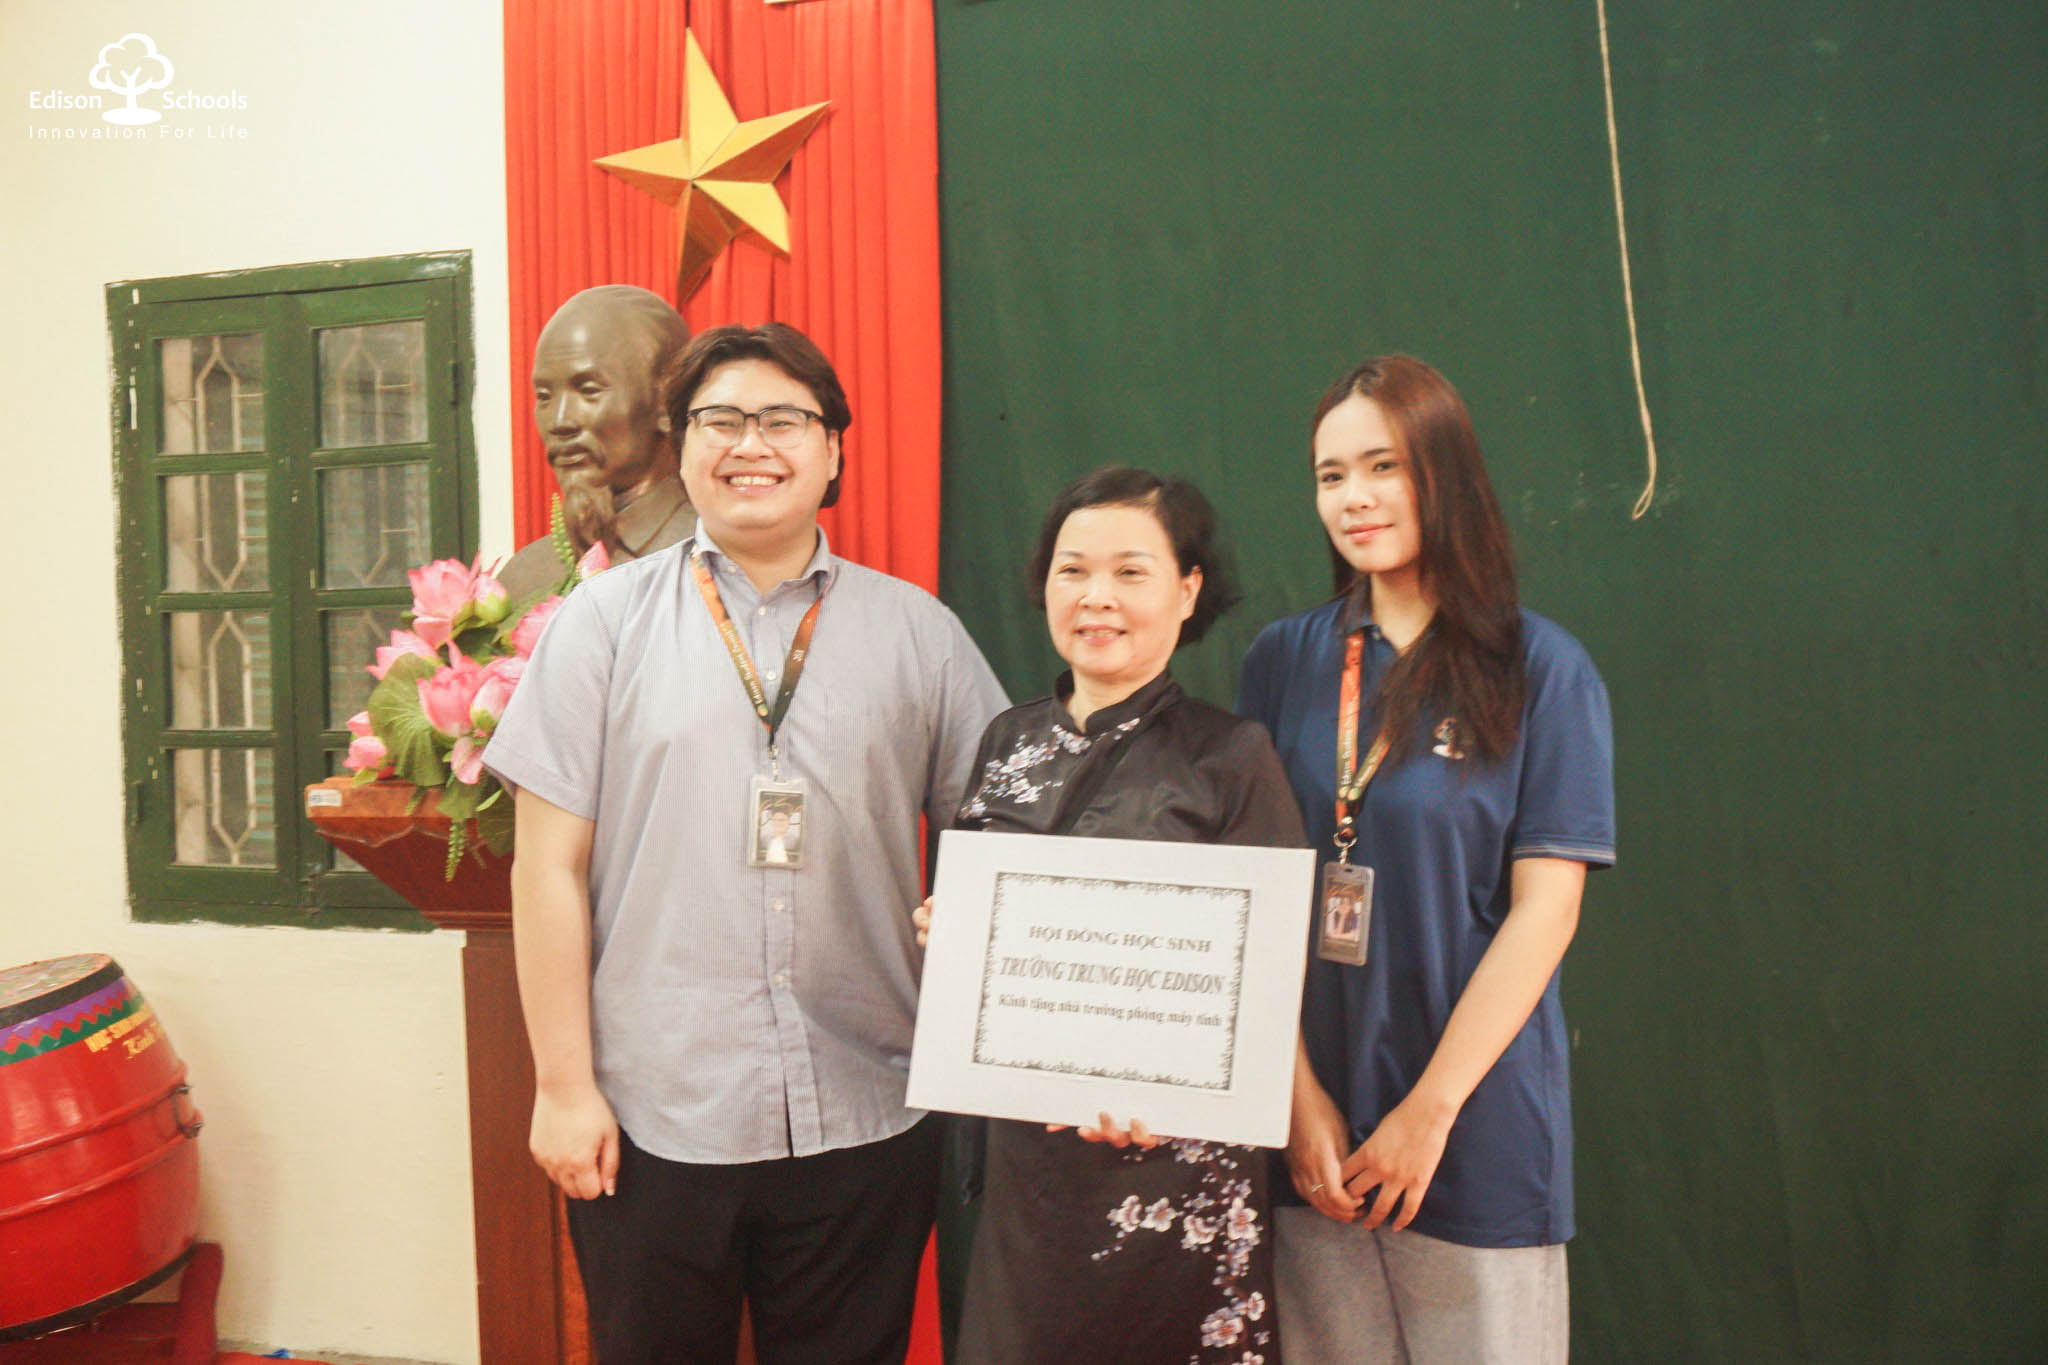 Hoạt động từ thiện của Hội học sinh Trung học Edison tại trường PTCS dân lập dạy trẻ câm điếc Hà Nội